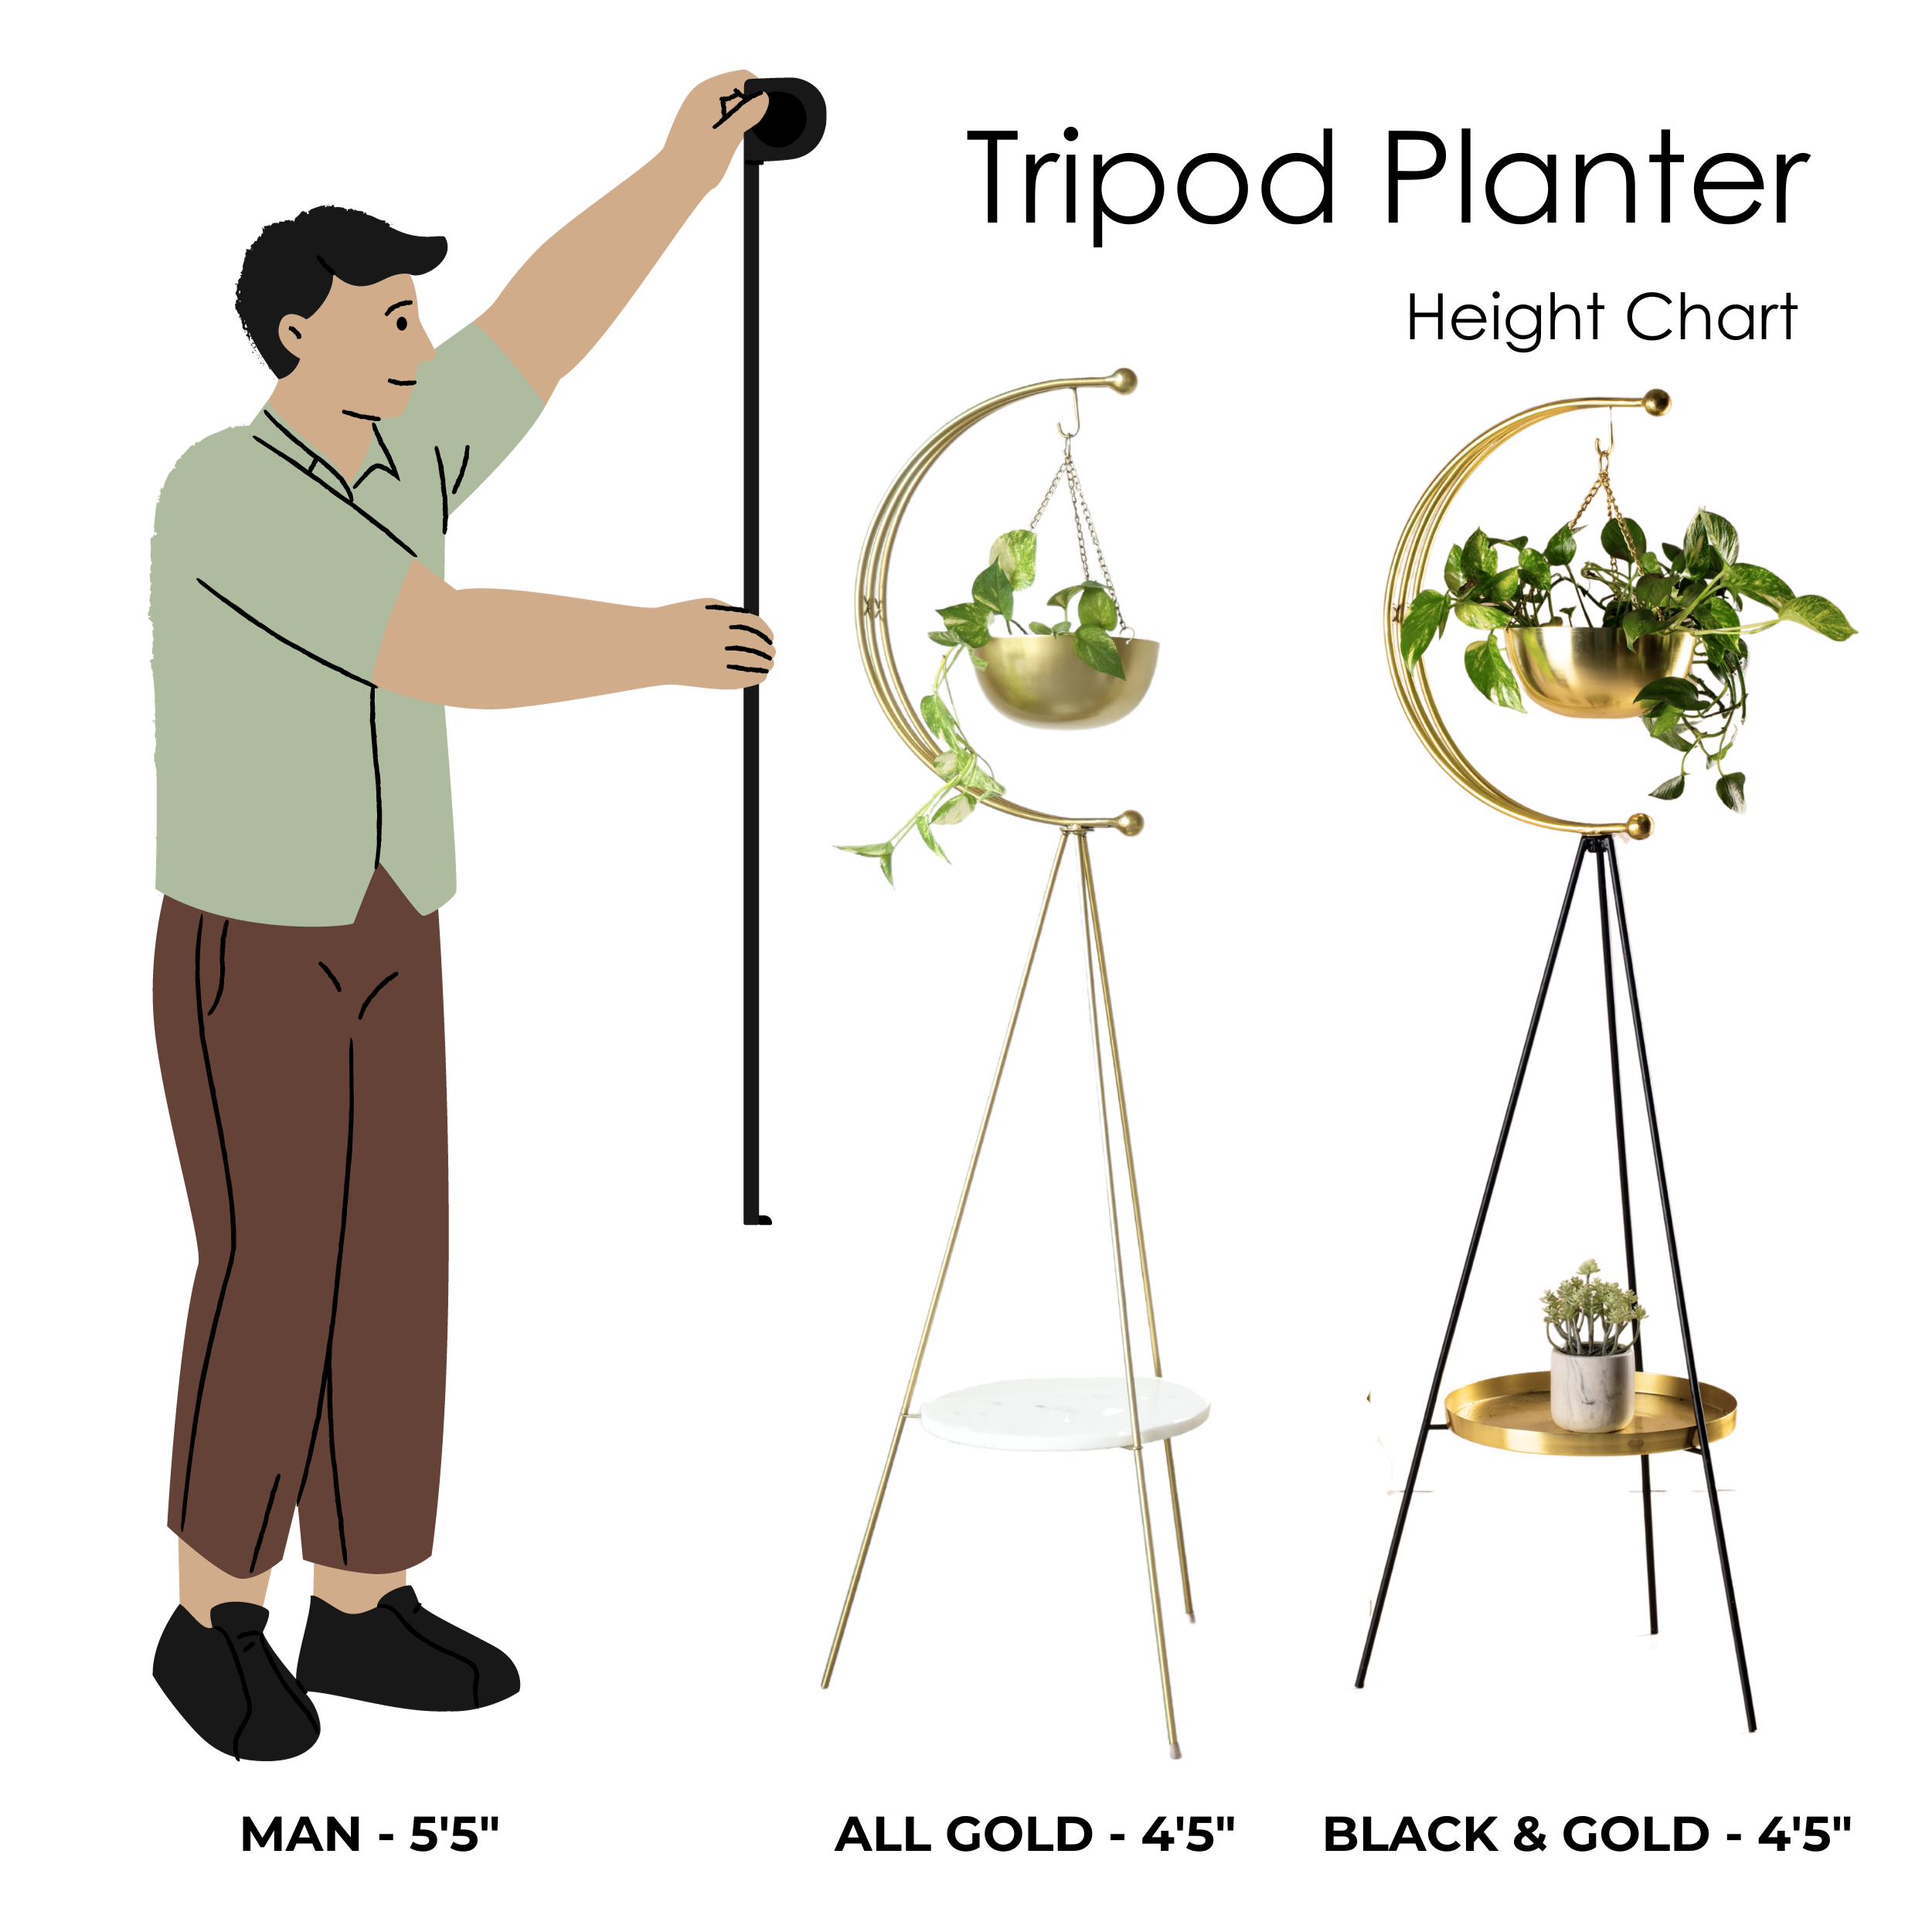 muun tripod planter - Black and Gold